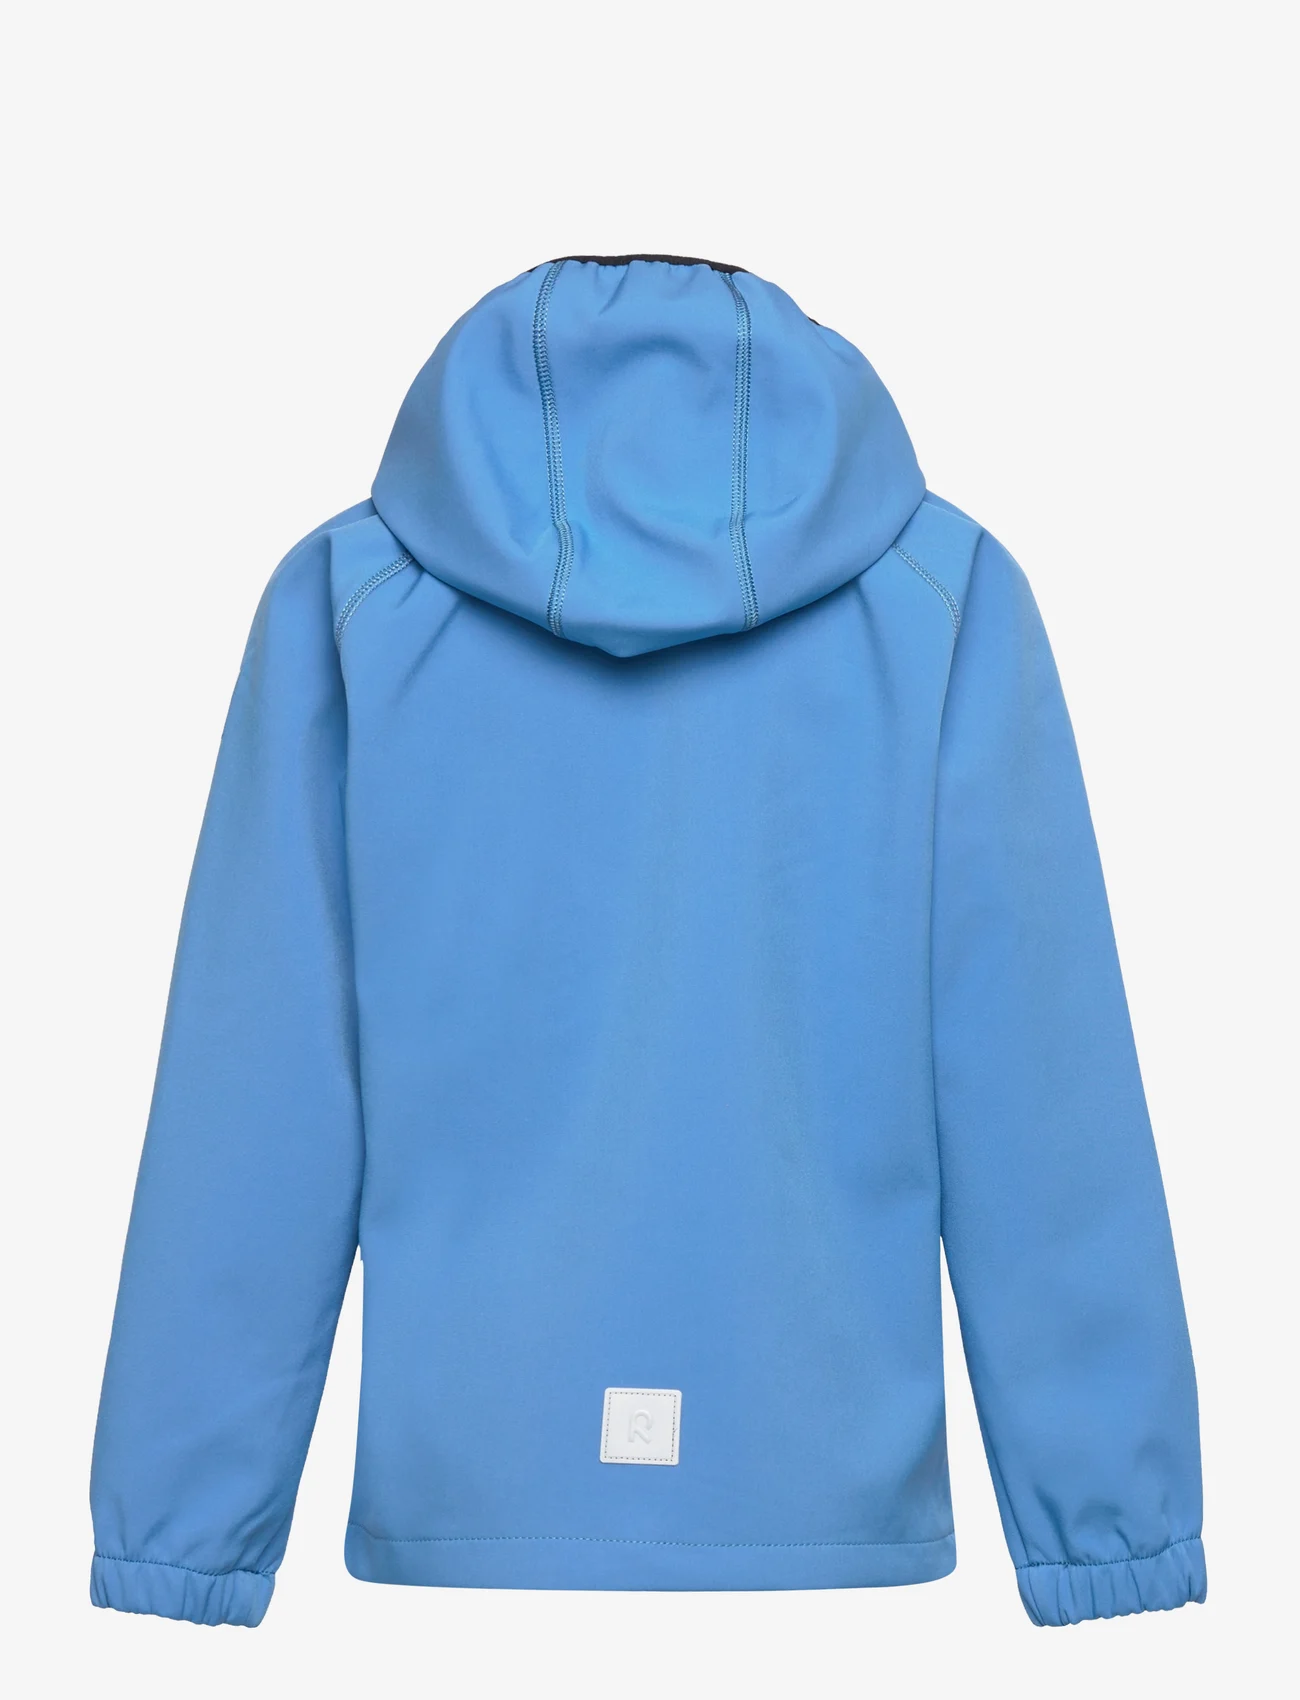 Reima - Kids' softshell jacket Vantti - kinder - cool blue - 1